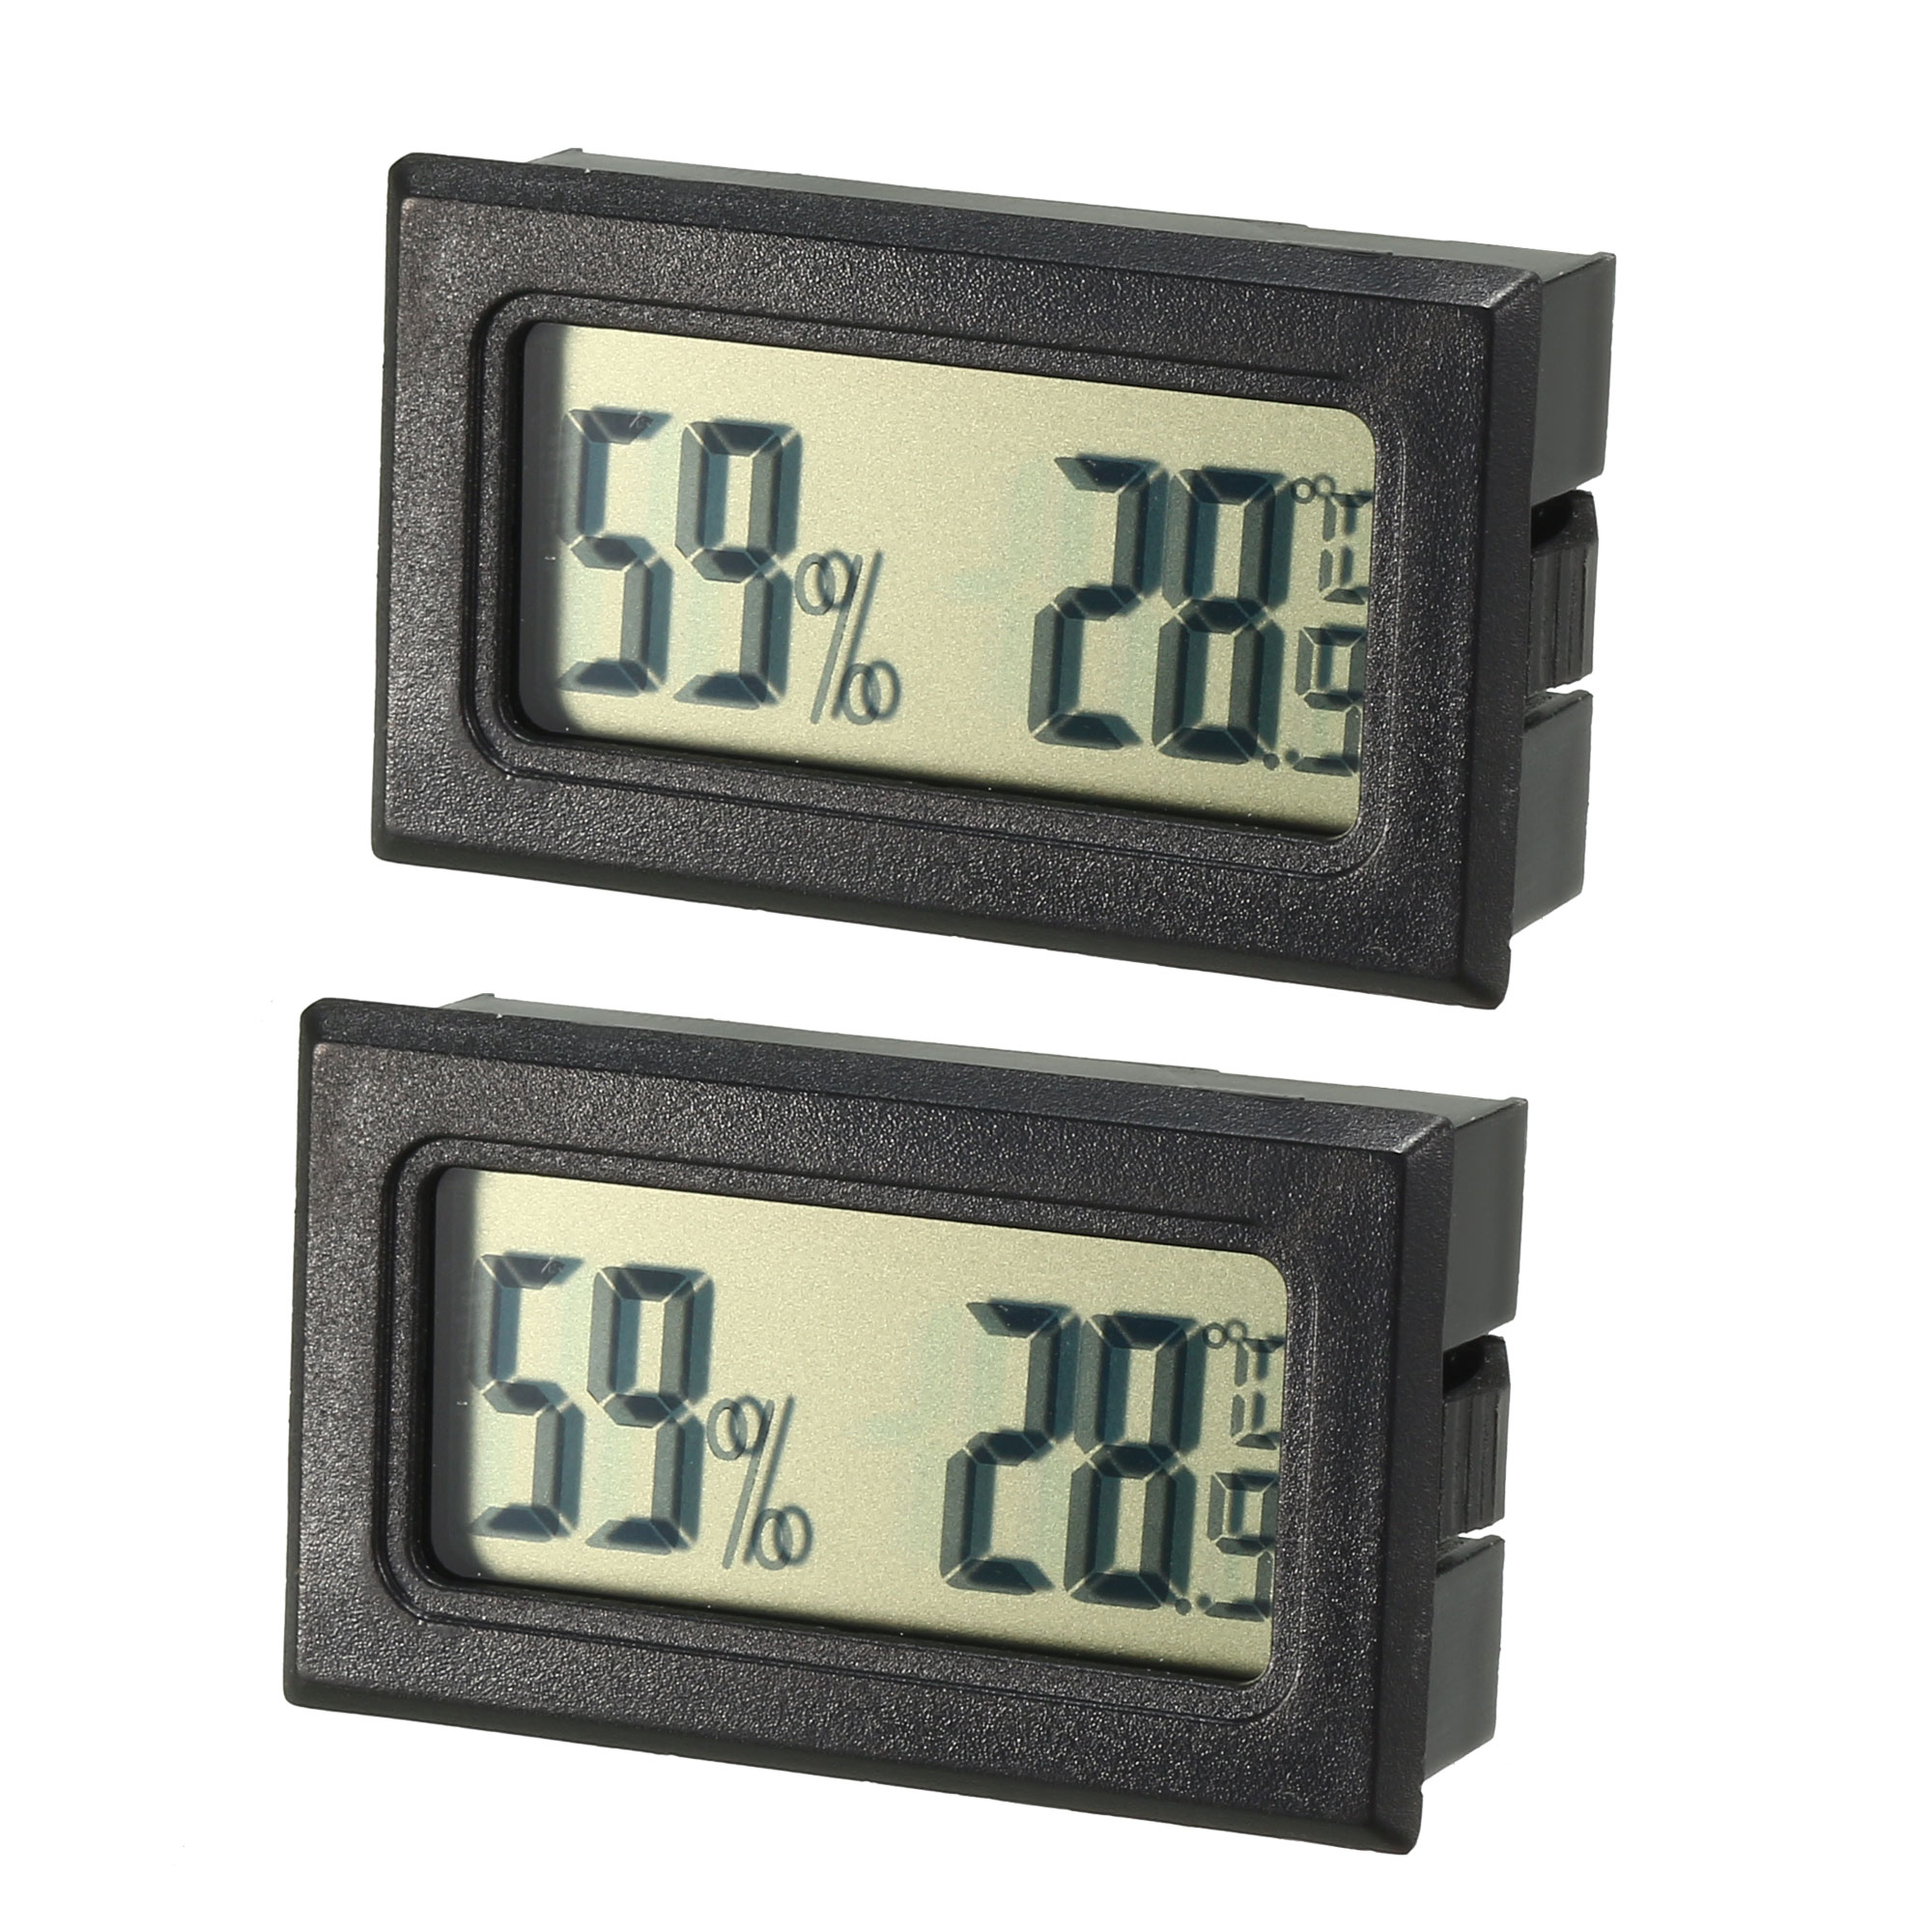 Mini LCD  Digital Thermometer Hygrometer Temperature Humidity Meter Gauge